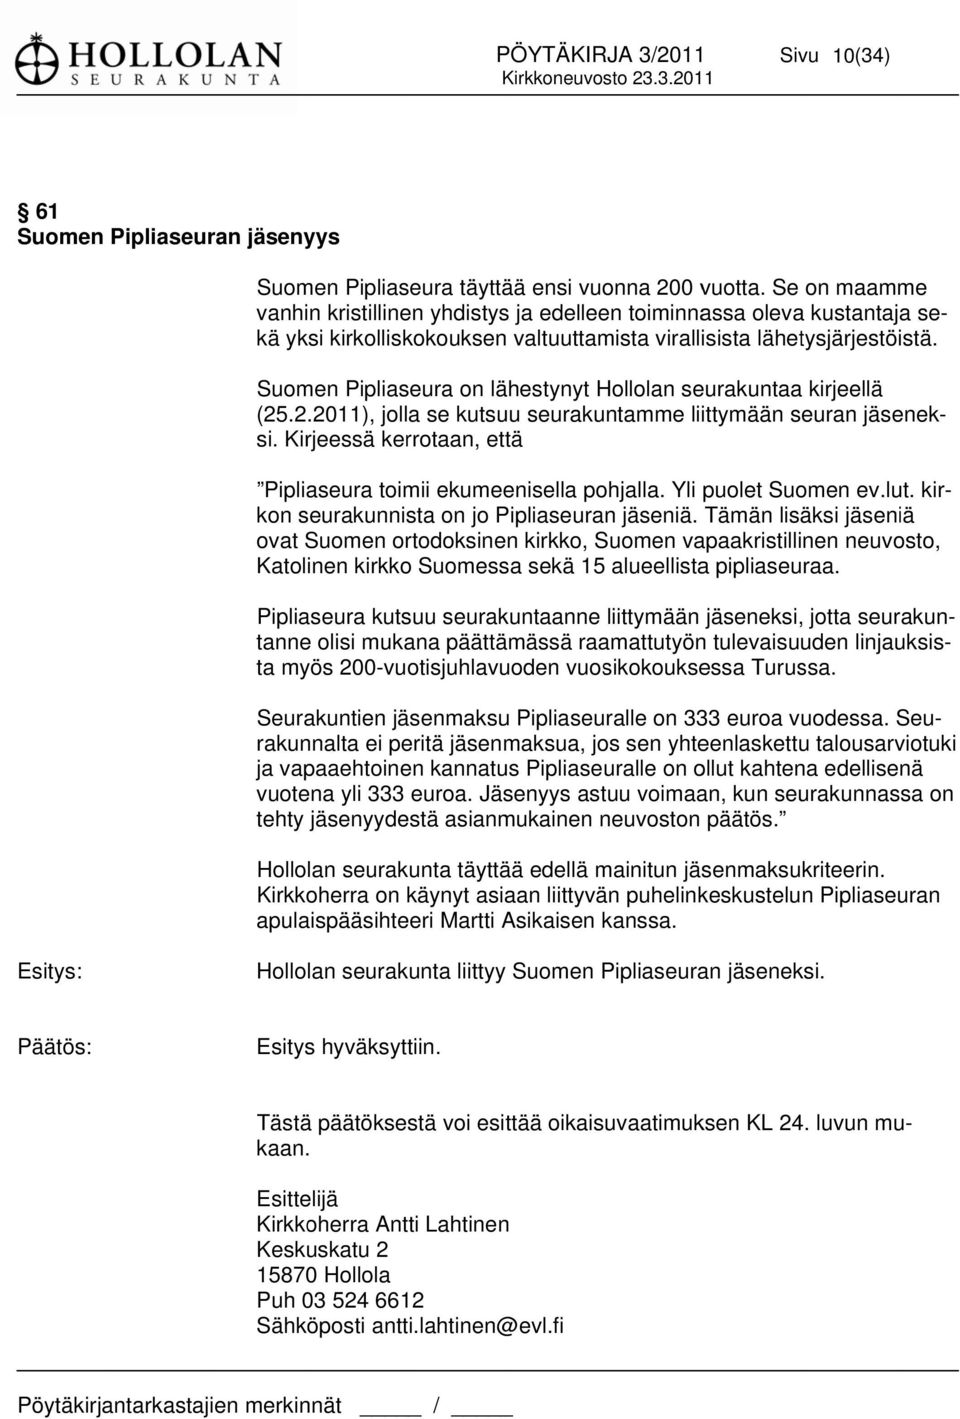 Suomen Pipliaseura on lähestynyt Hollolan seurakuntaaa kirjeellä (25.2.2011), jolla se kutsuu seurakuntamme liittymään seuran jäsenek- si.